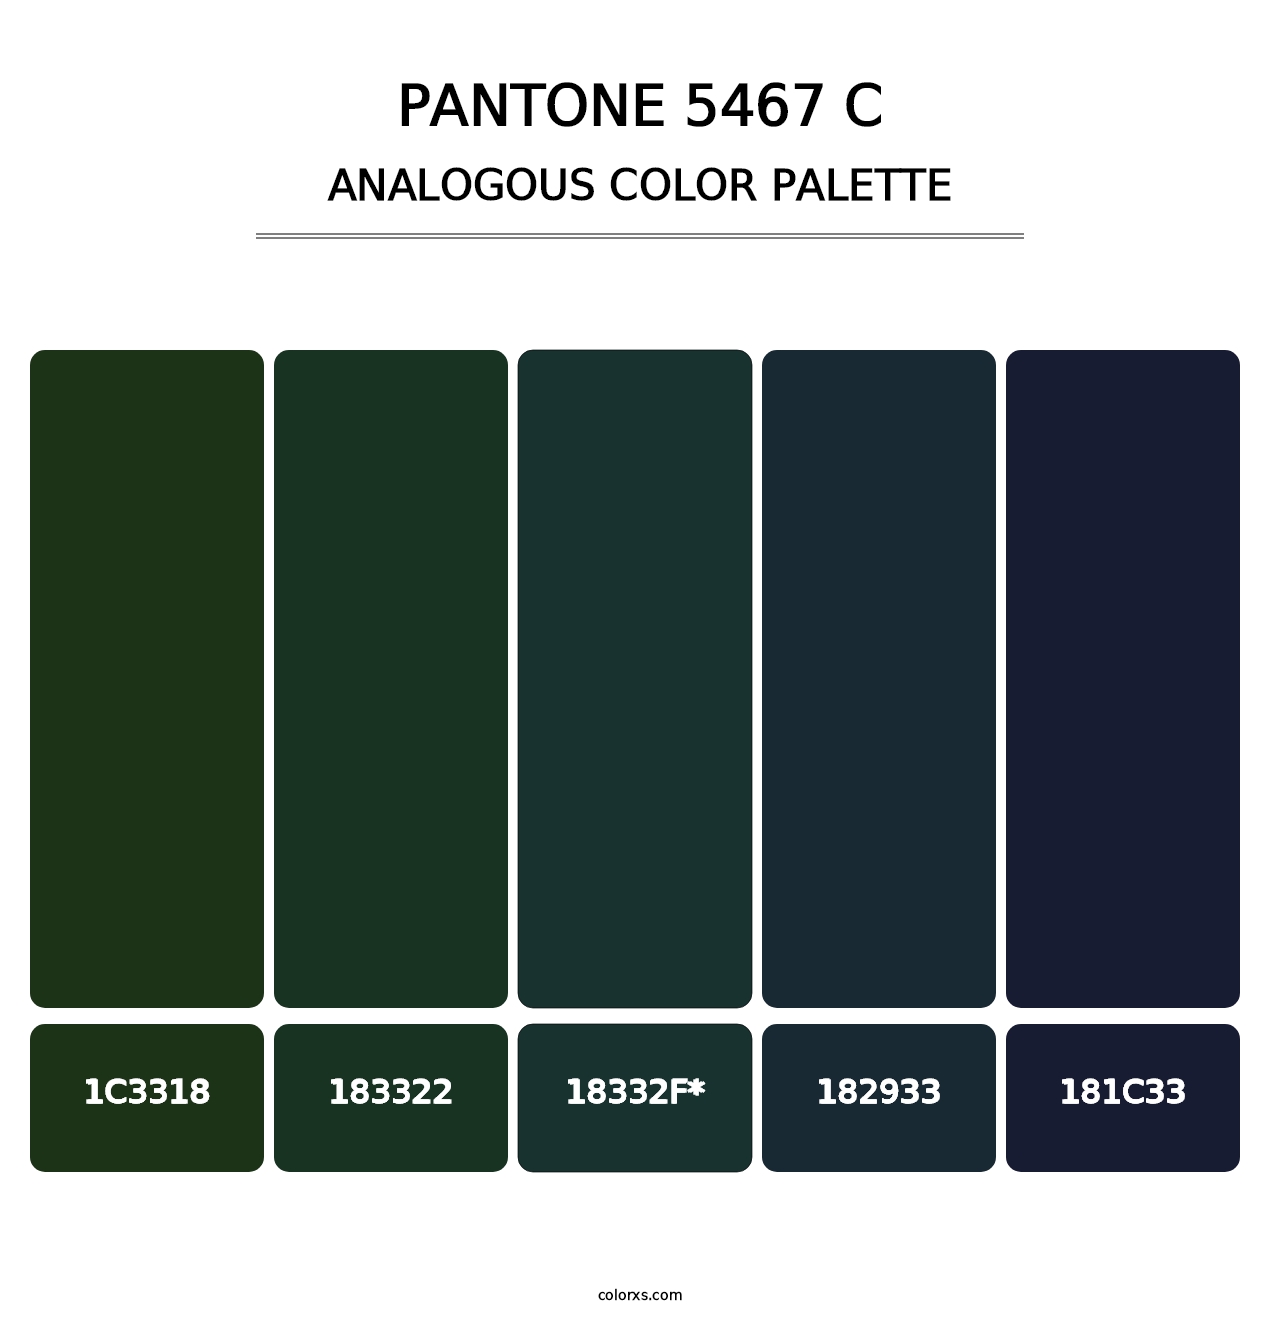 PANTONE 5467 C - Analogous Color Palette